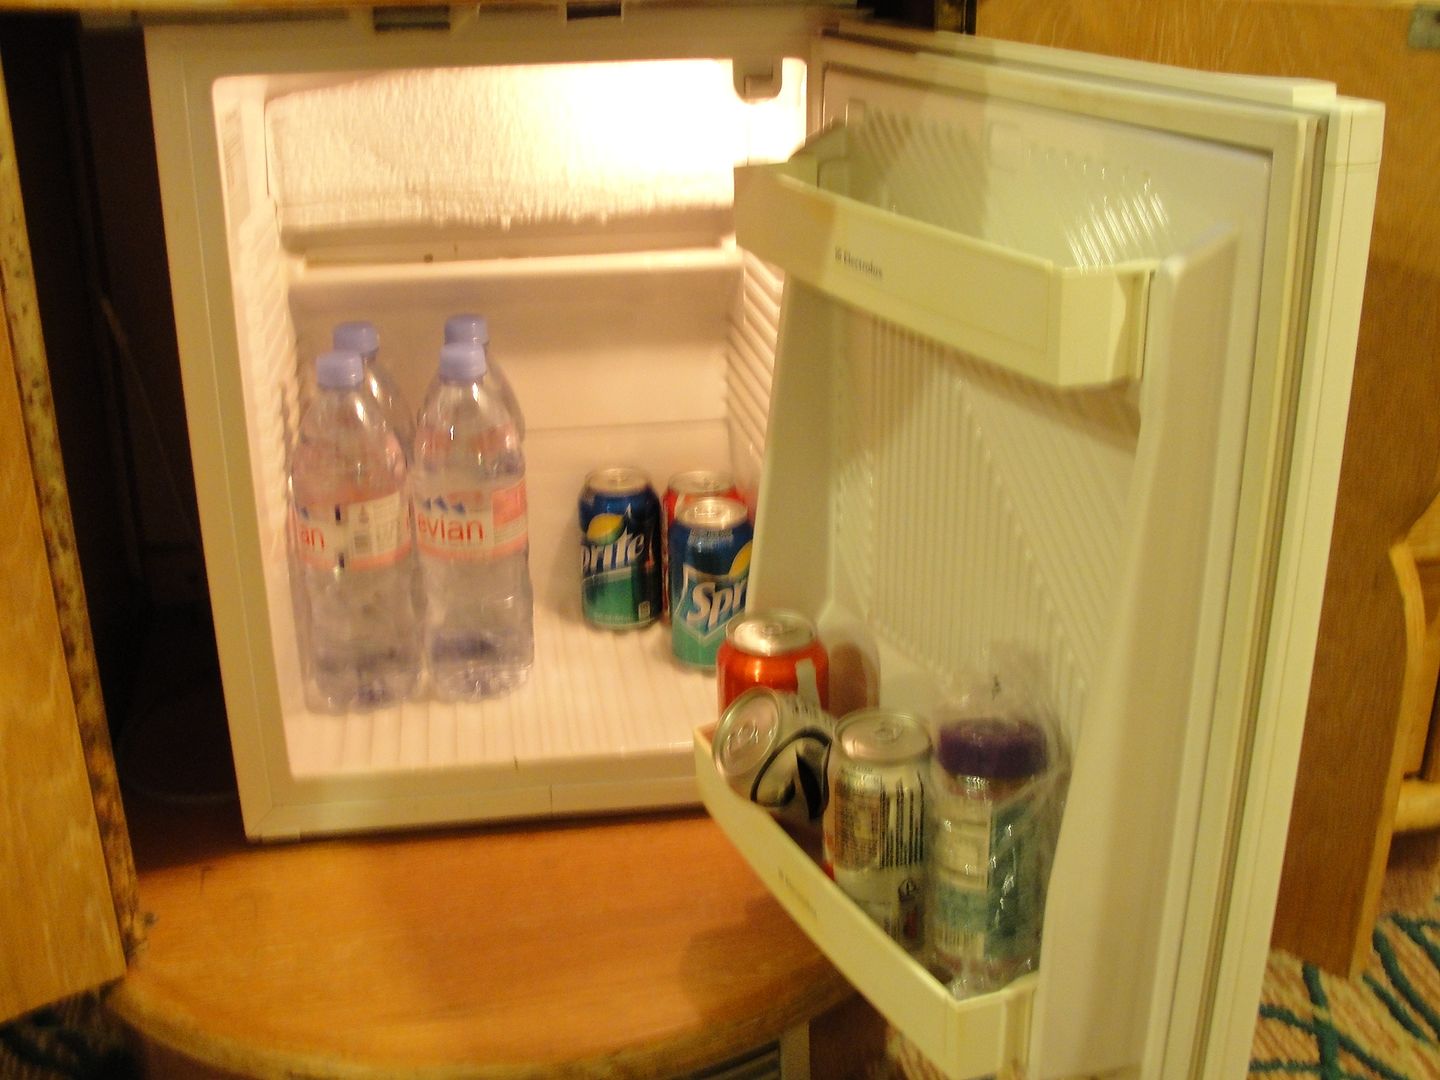 refrigeratorcooler_zps0d6edb10.jpg